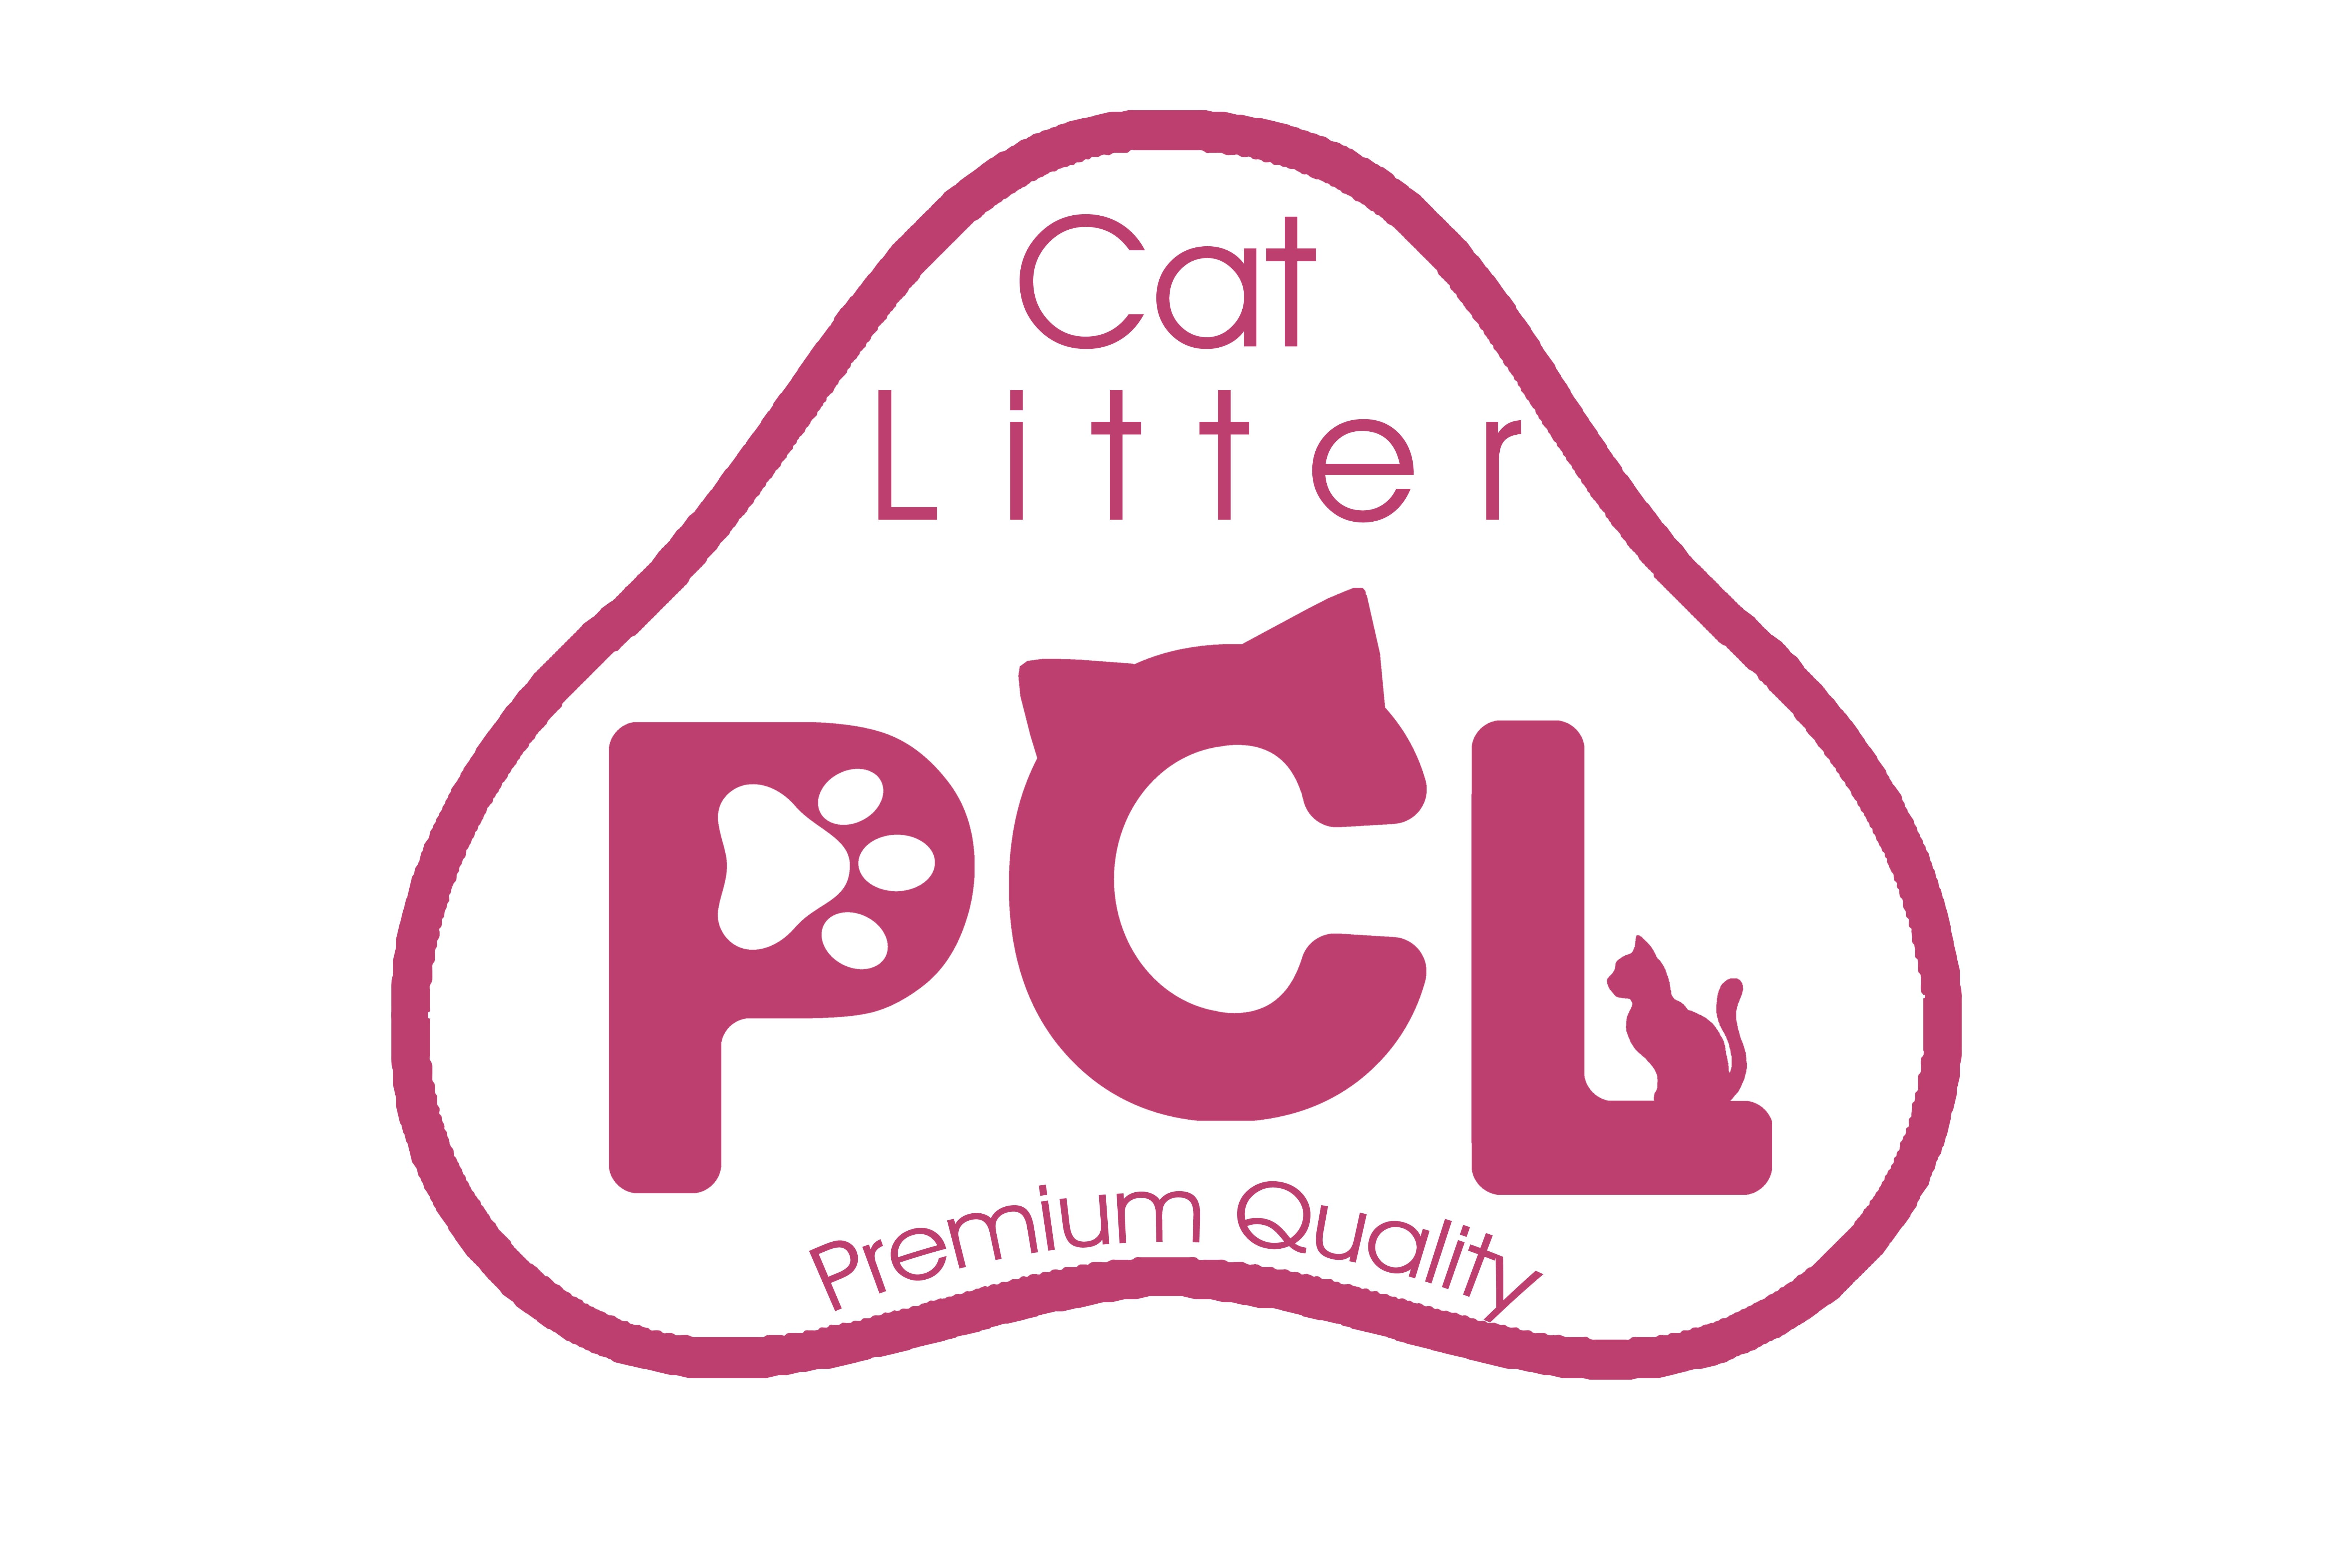 توليده کننده خاک بستر گربه PCL